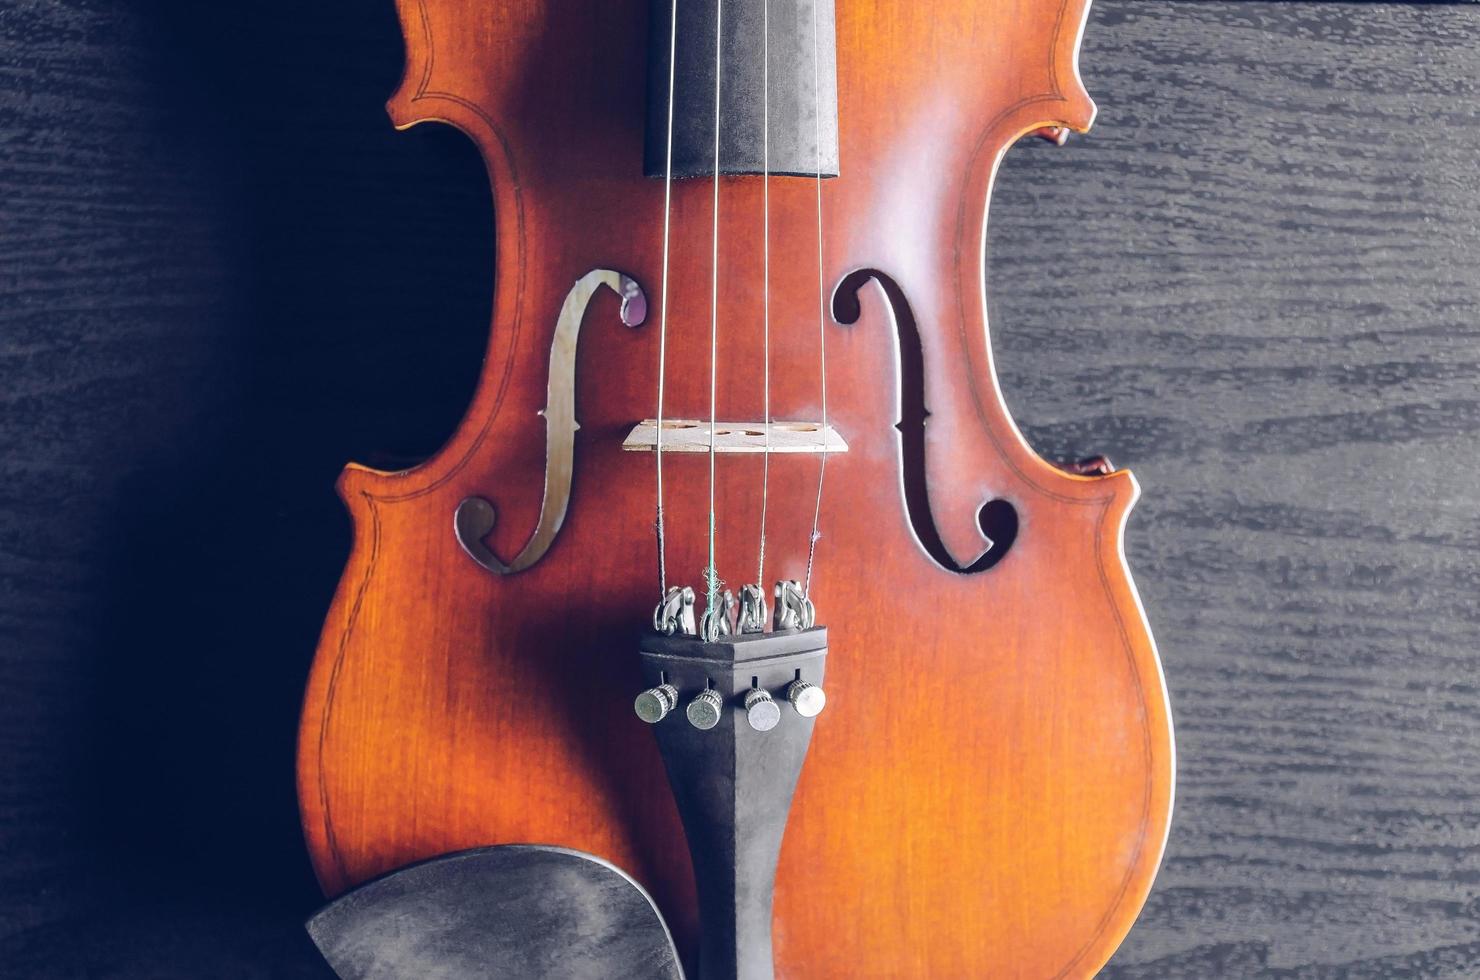 le violon sur table, instrument de musique classique utilisé dans l'orchestre. photo